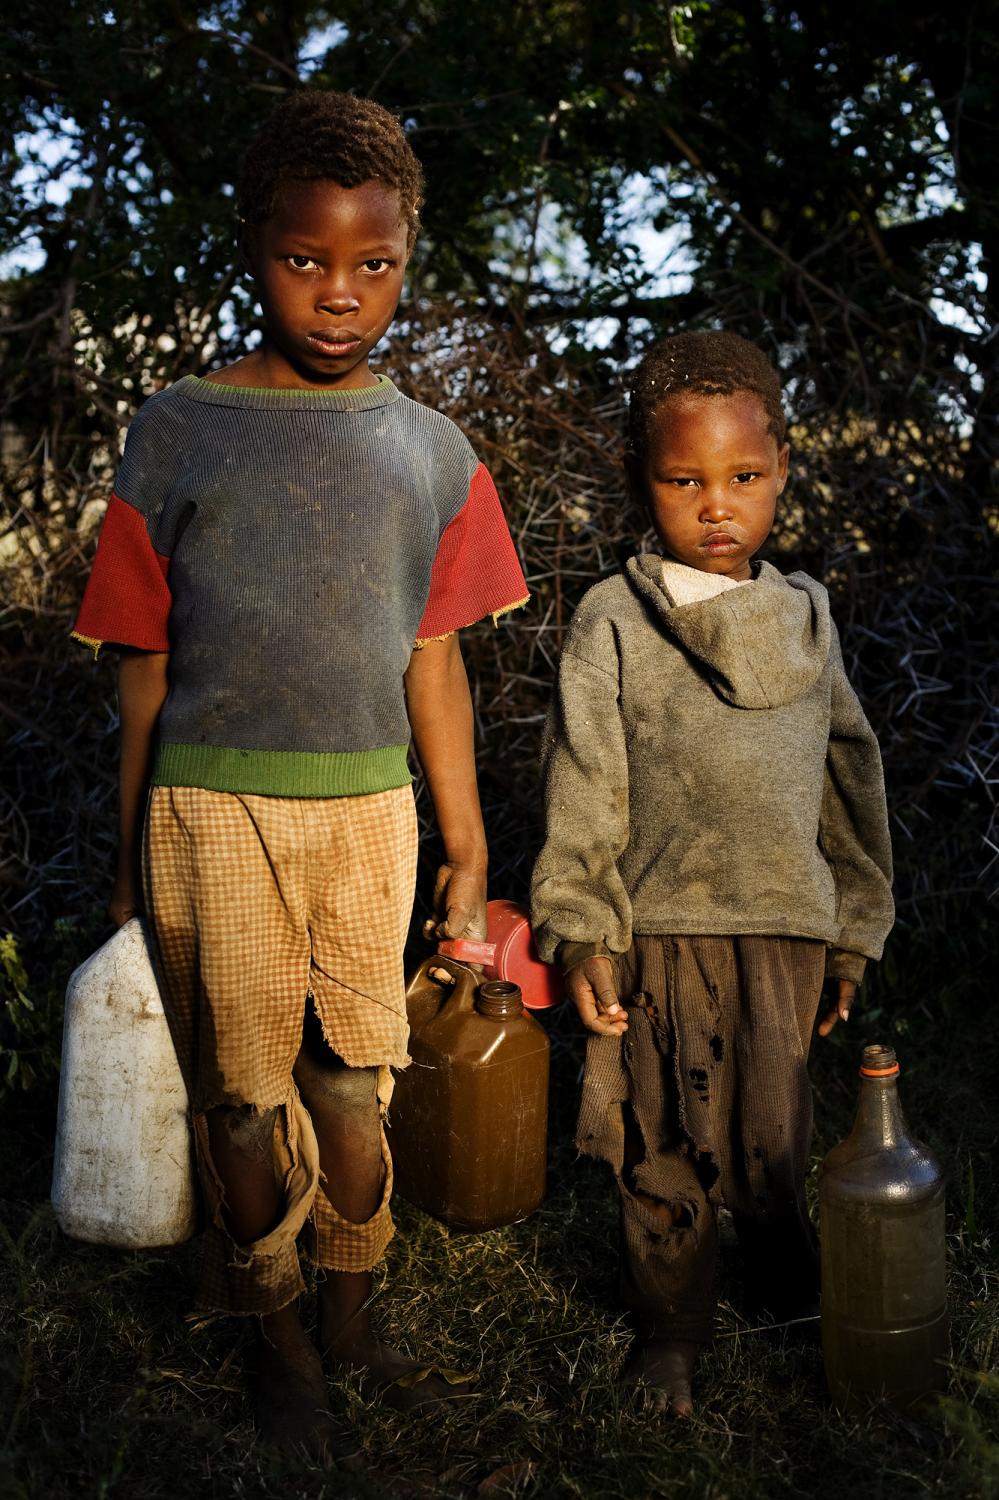 SwazilandÂ´s orphans  - Mbangave, Swaziland.
Four year old Mfanzile Sifundza and...